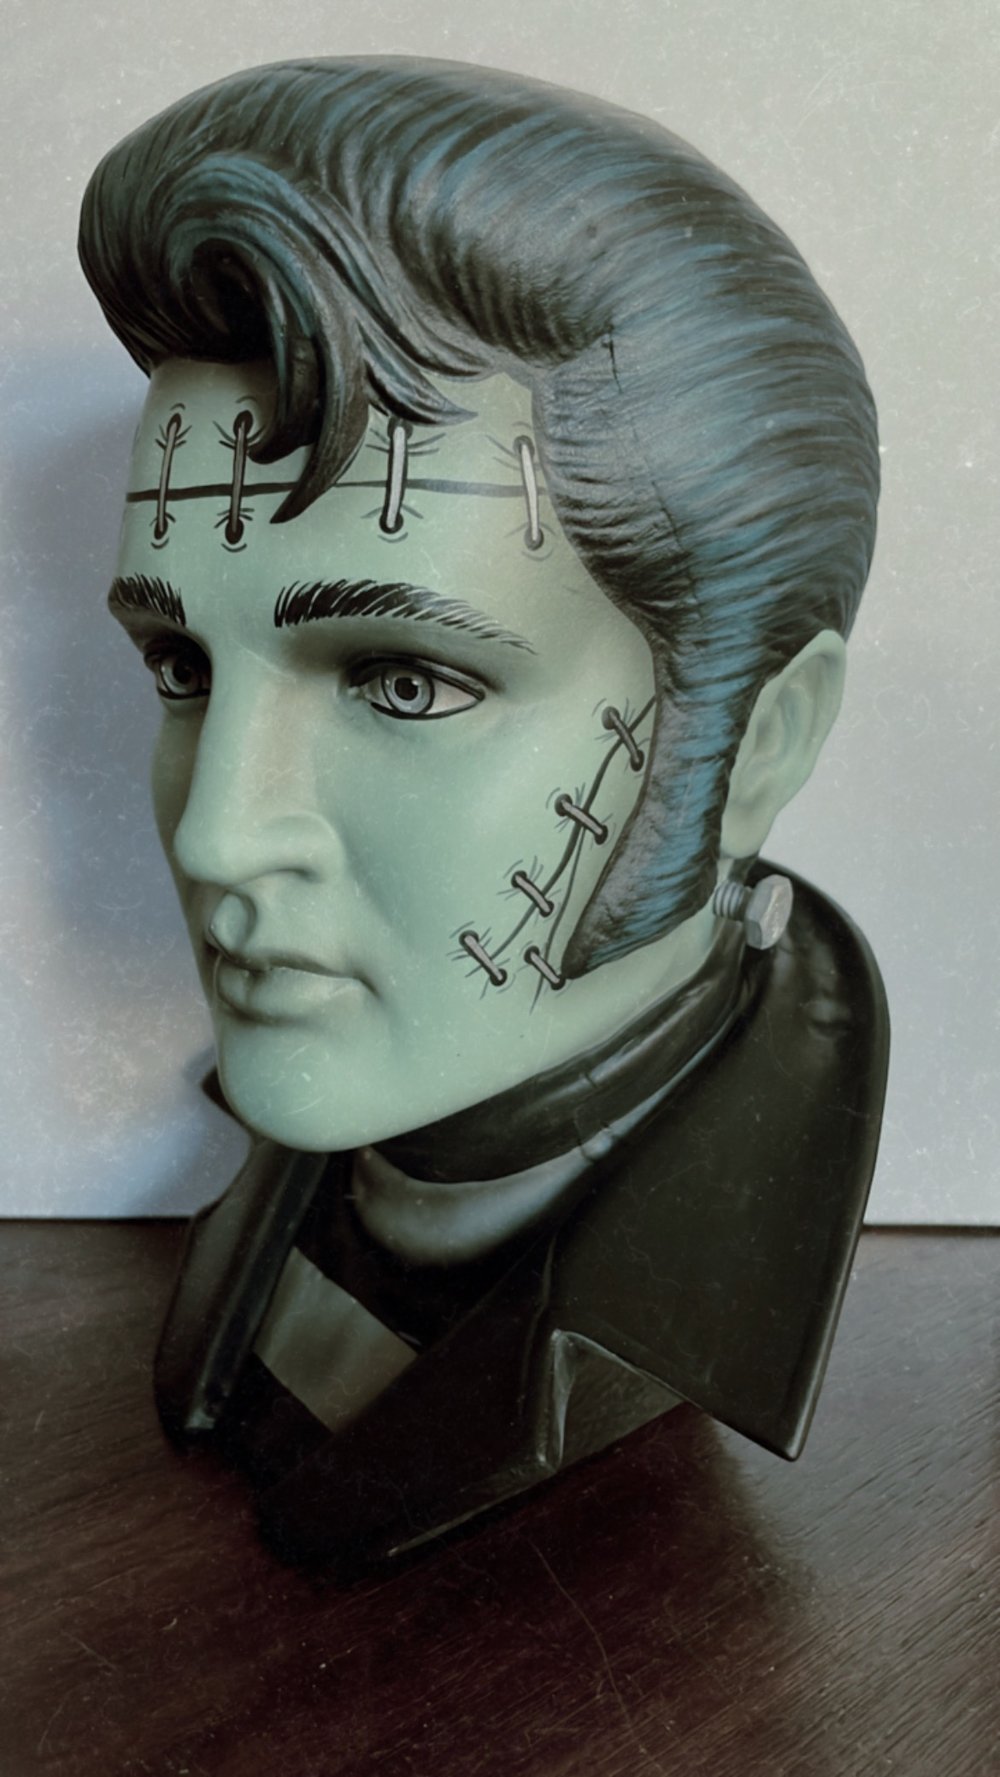 Frankenstein Ceramic Elvis Bust